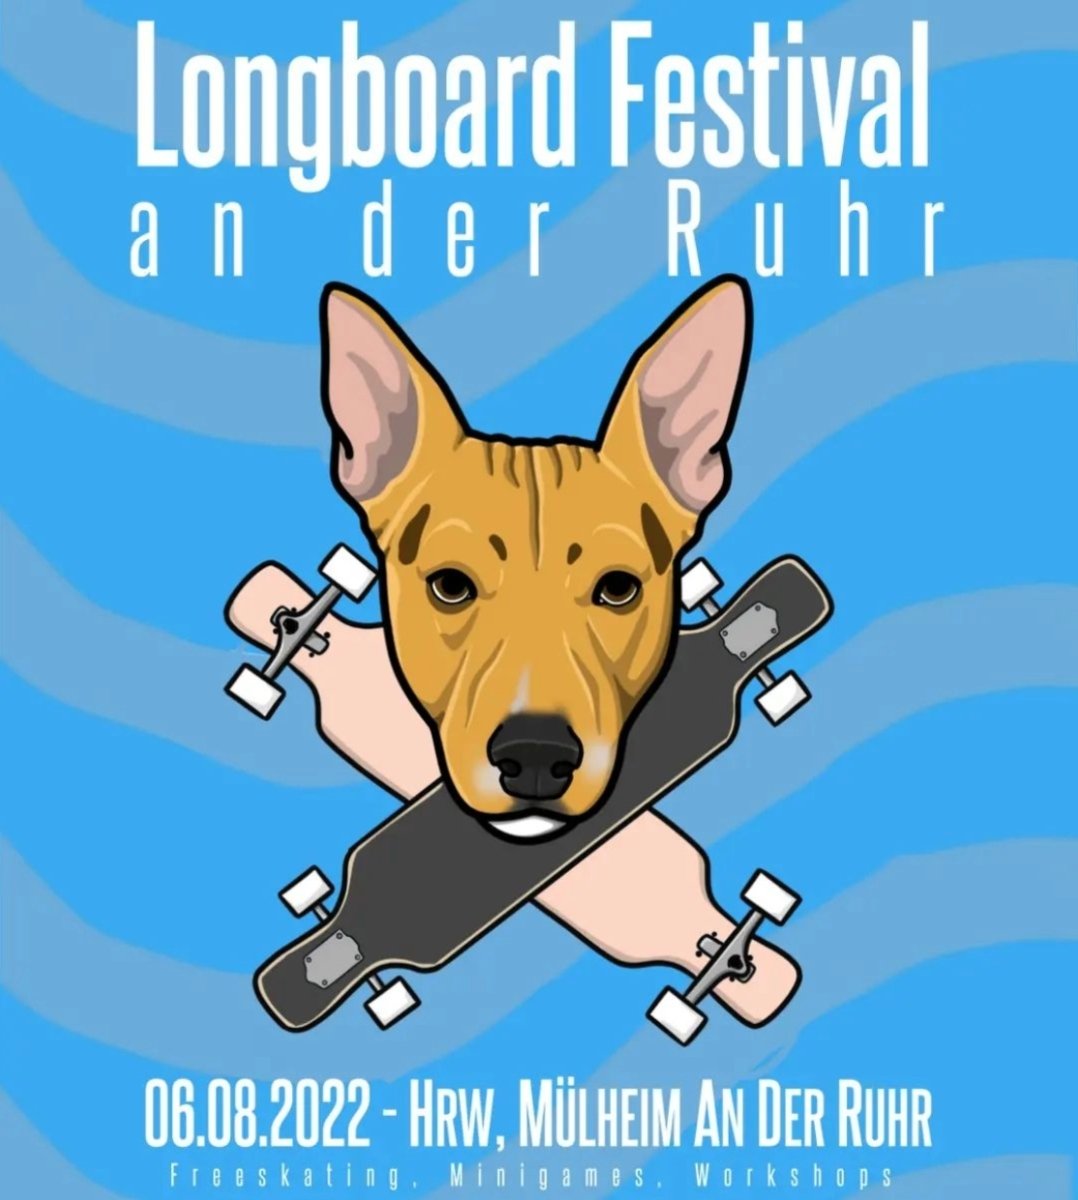 Longboard Festival an der Ruhr - 6th August 2022 - True Supplies